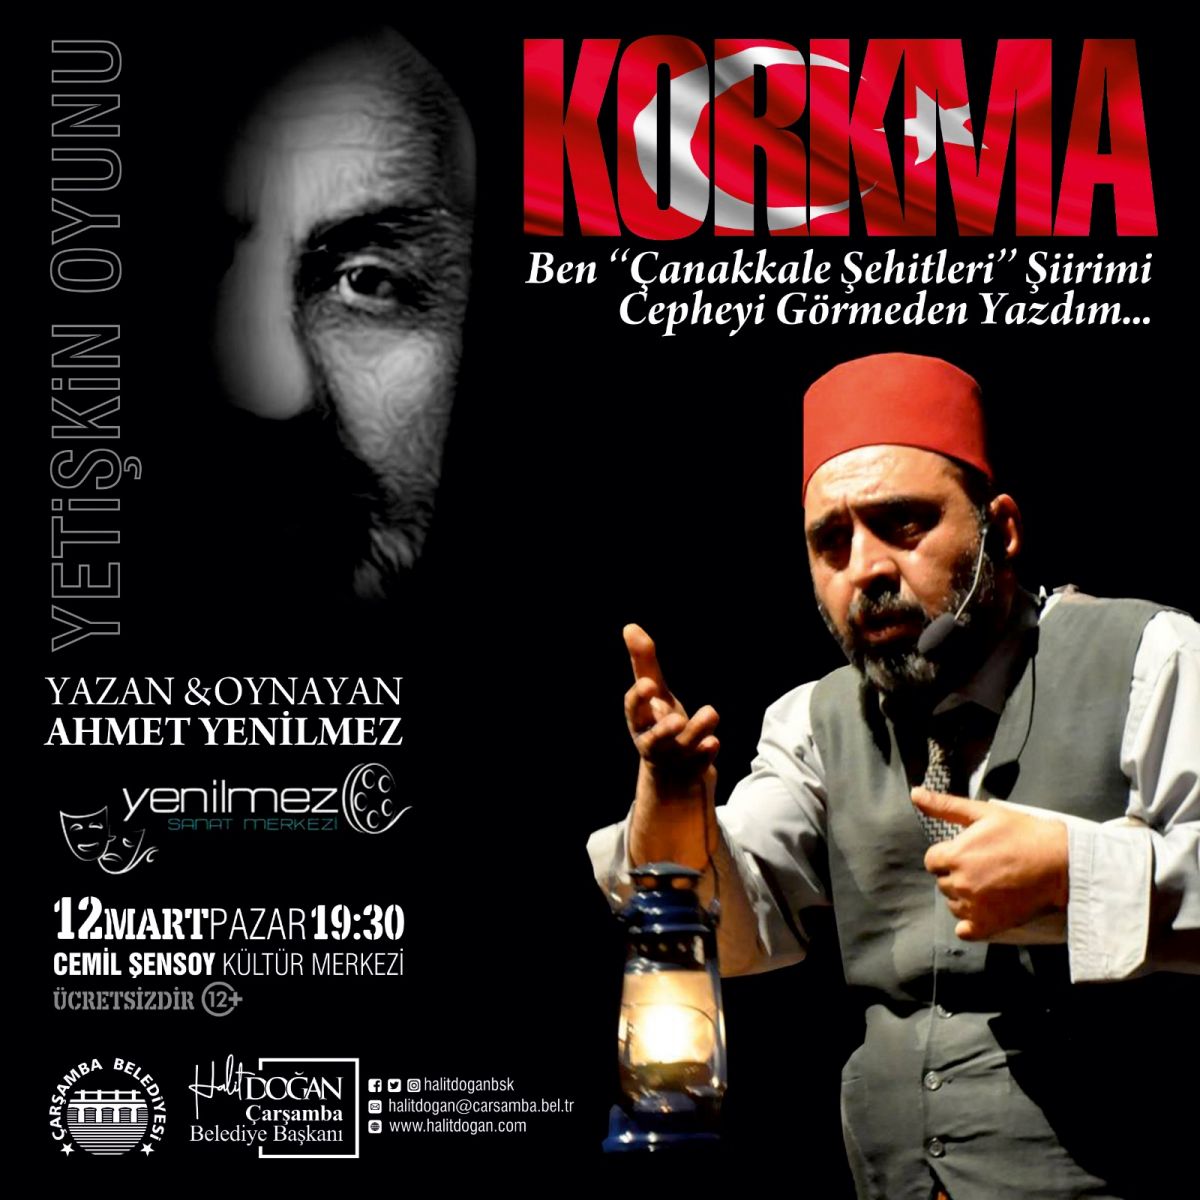 Çarşamba'da İstiklal Marşı'nın kabulüne özel 'Korkma' tiyatro oyunu